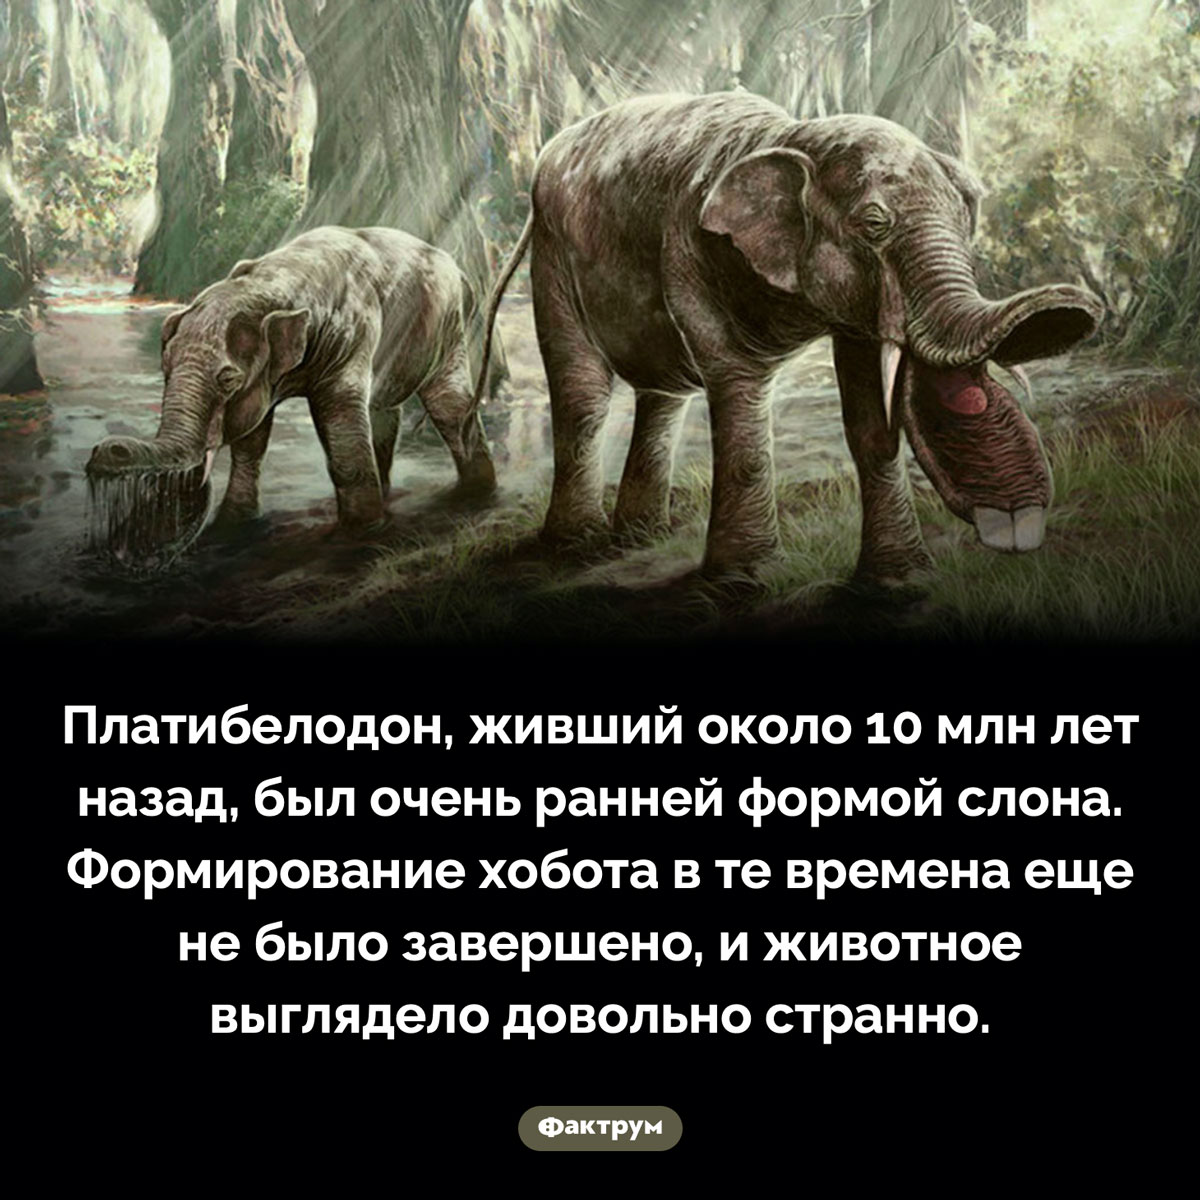 Очень странный платибелодон. Платибелодон, живший около 10 млн лет назад, был очень ранней формой слона. Формирование хобота в те времена еще не было завершено, и животное выглядело довольно странно.